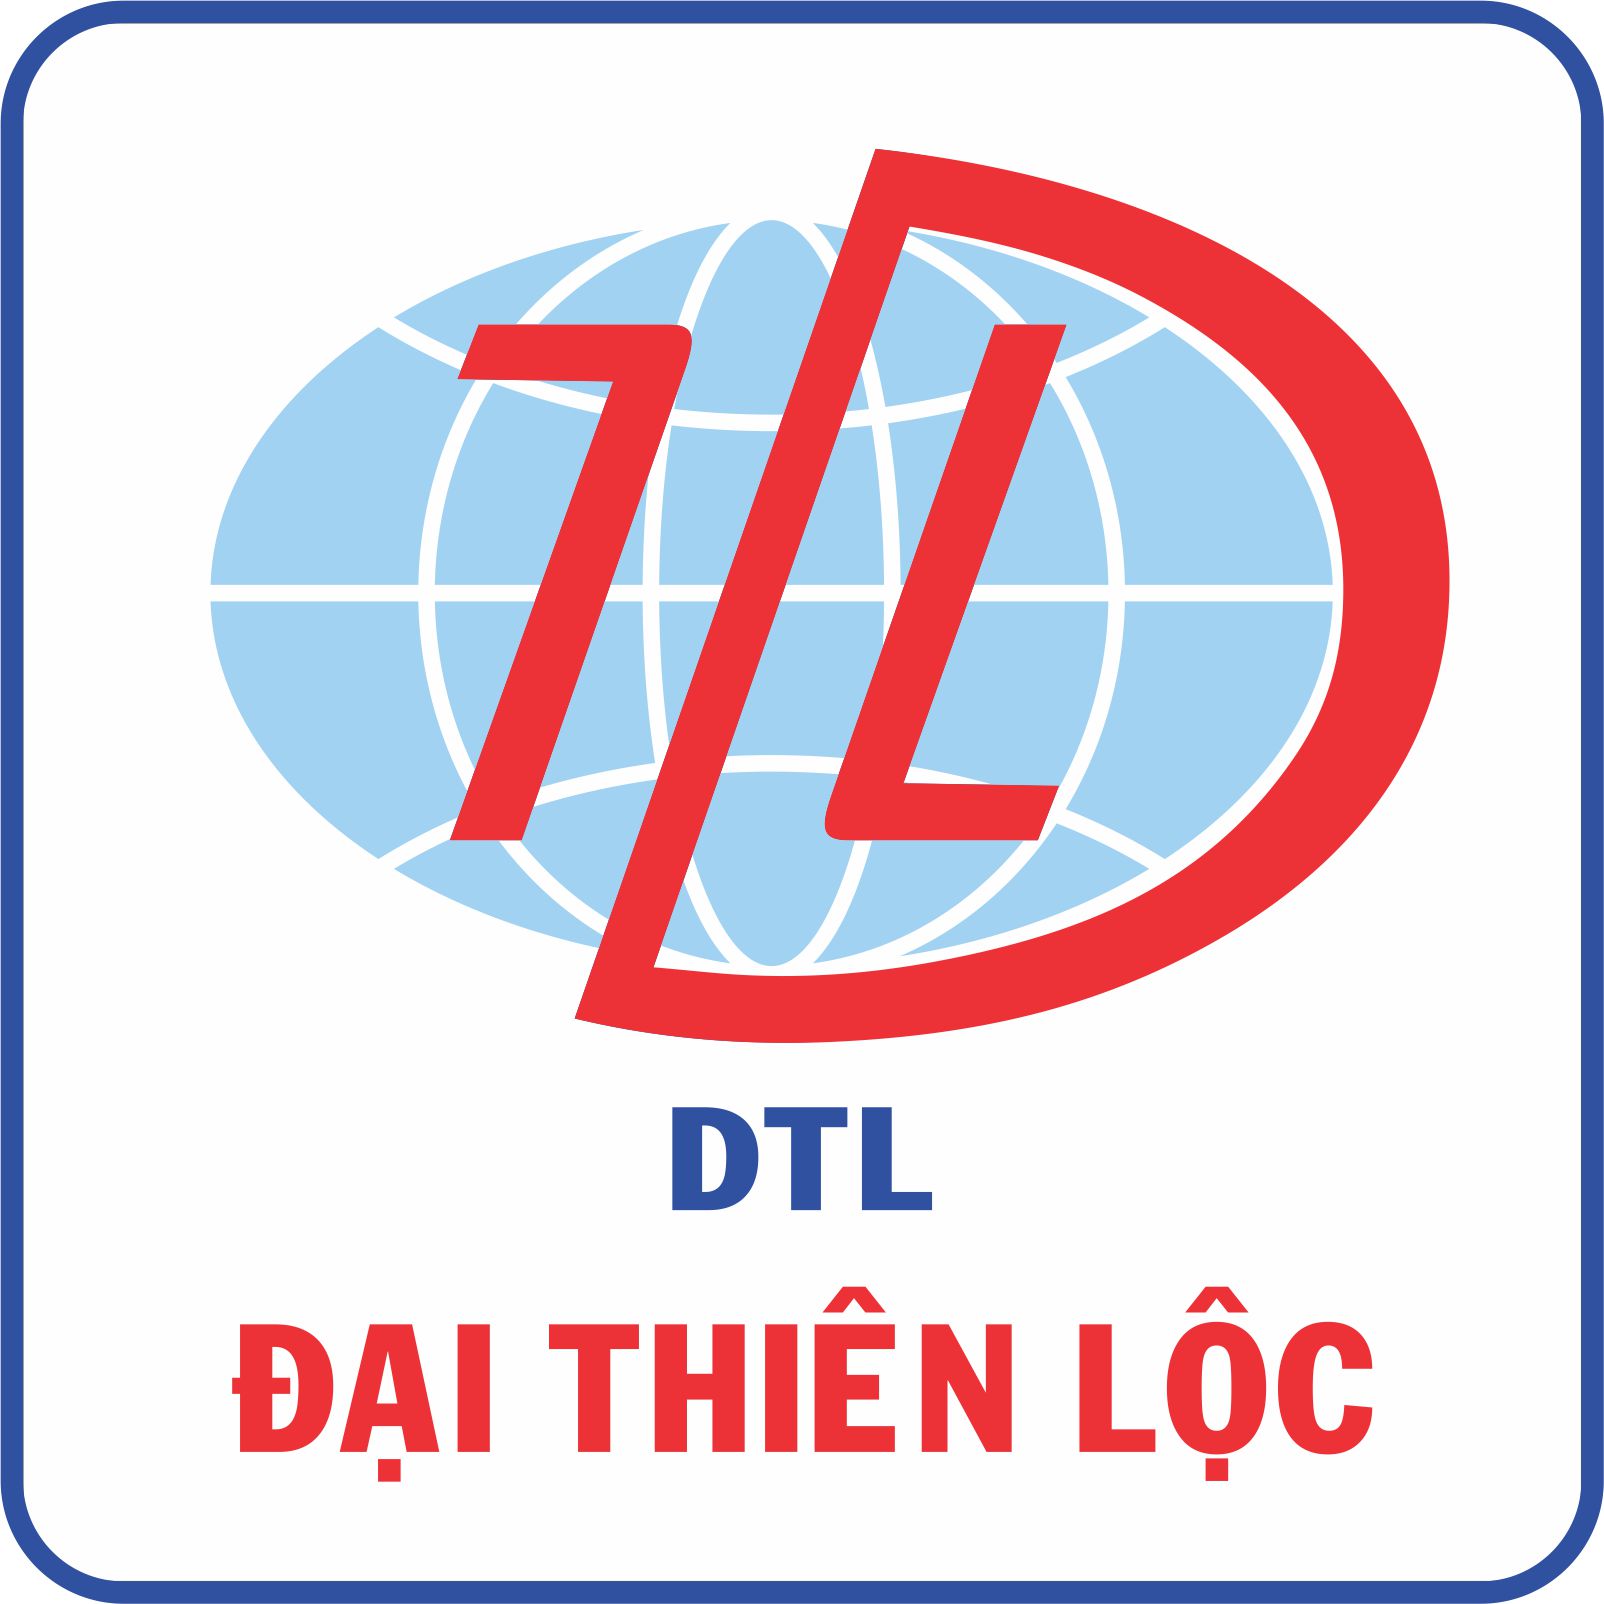 DTL: Chủ tịch Nguyễn Thanh Nghĩa đã nắm trên 50% vốn